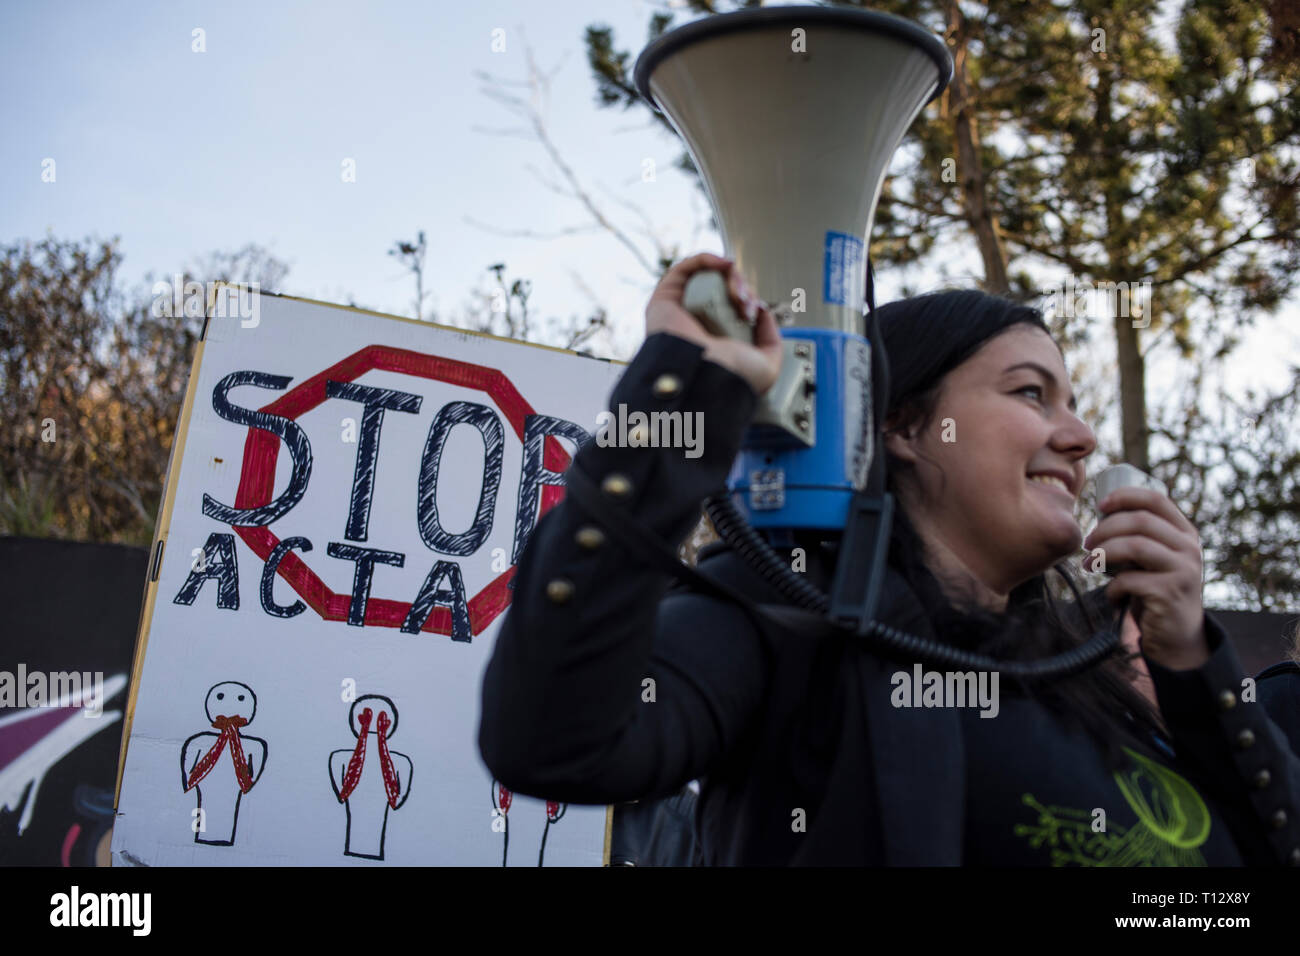 Una donna è visto cantando slogan su un megafono durante la protesta. Il voto sulla modifica del diritto d'autore nella Unione europea avrà luogo negli ultimi giorni del mese di marzo. Pertanto, il 23 marzo, gli oppositori del controverso gli articoli 11 e 13 intendono mobilitare e prendere per le strade. L'arresto internazionale Acta 2.0 le azioni di protesta hanno avuto luogo anche a Varsavia e altre numerose città della Polonia. Foto Stock